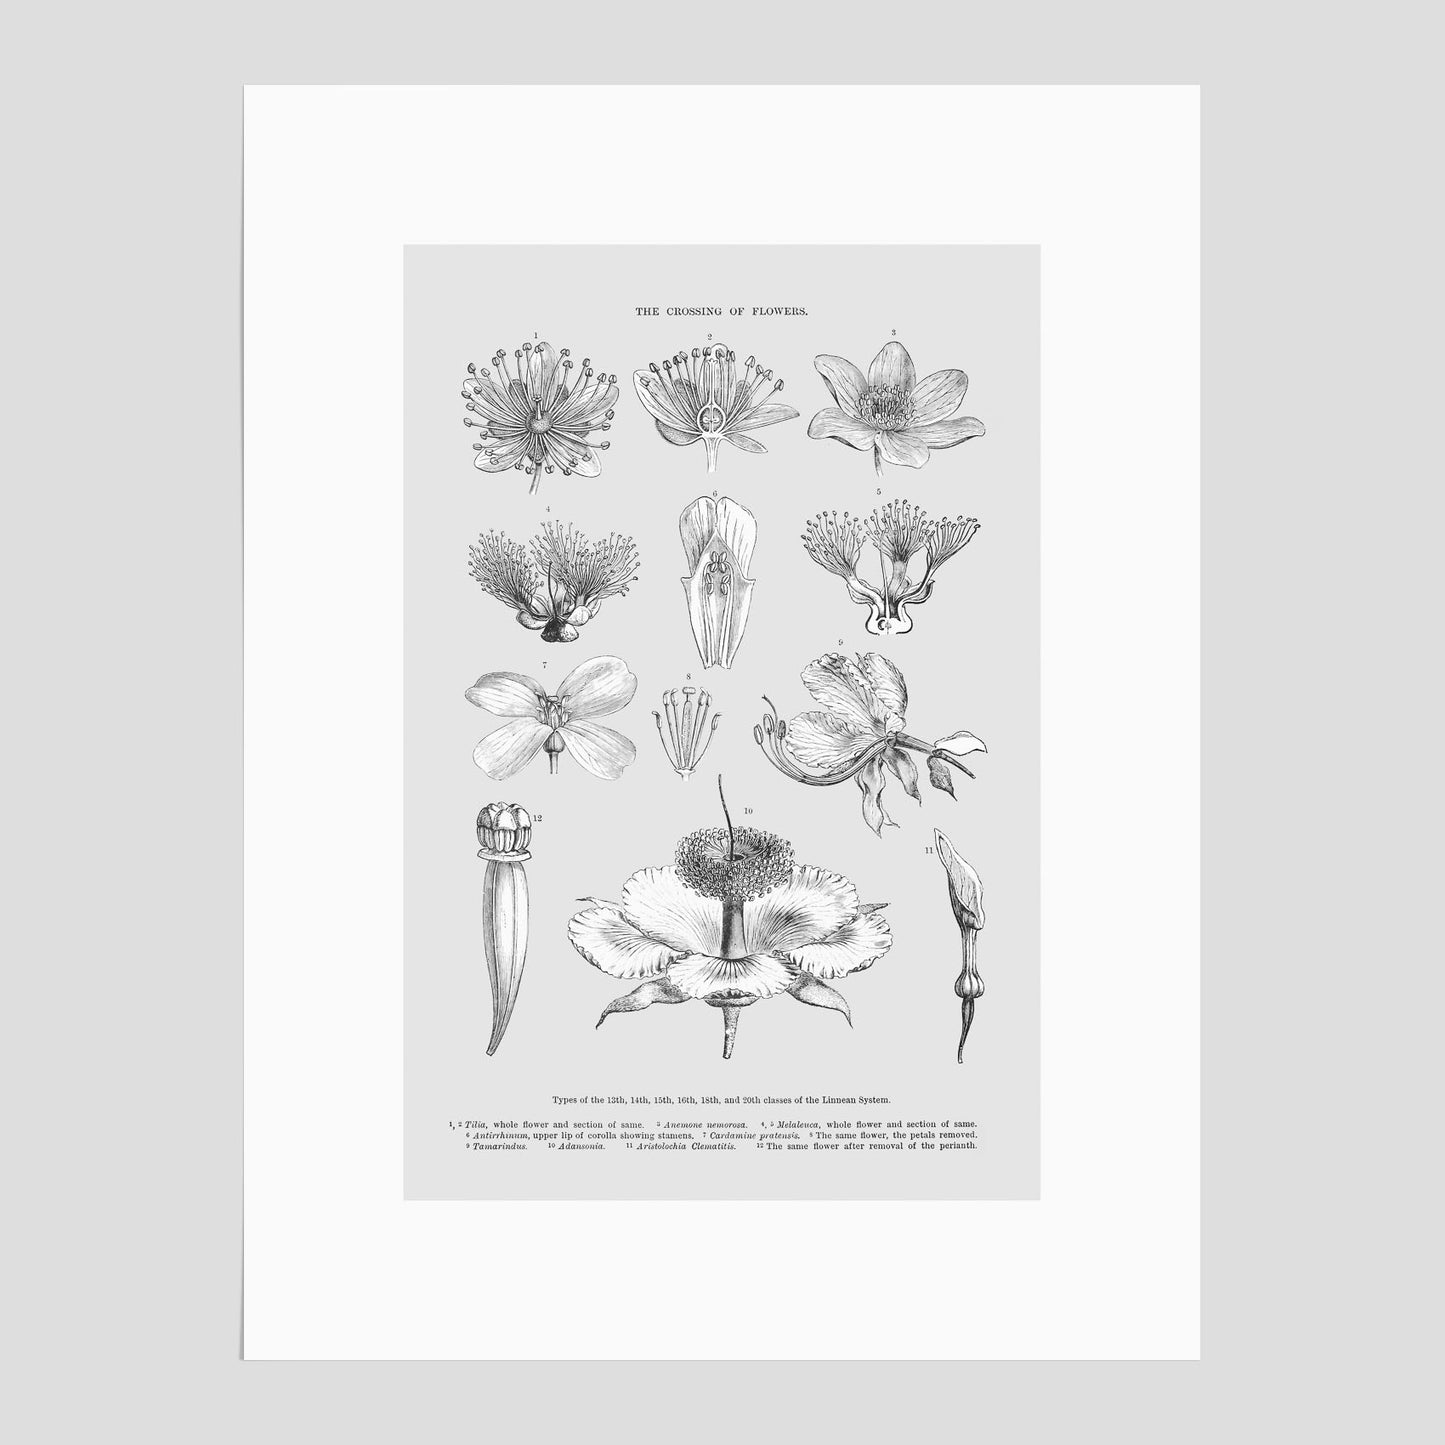 En vintageposter som föreställer blommor utifrån Linnésystemet (även kallad Linnés sexualsystem)